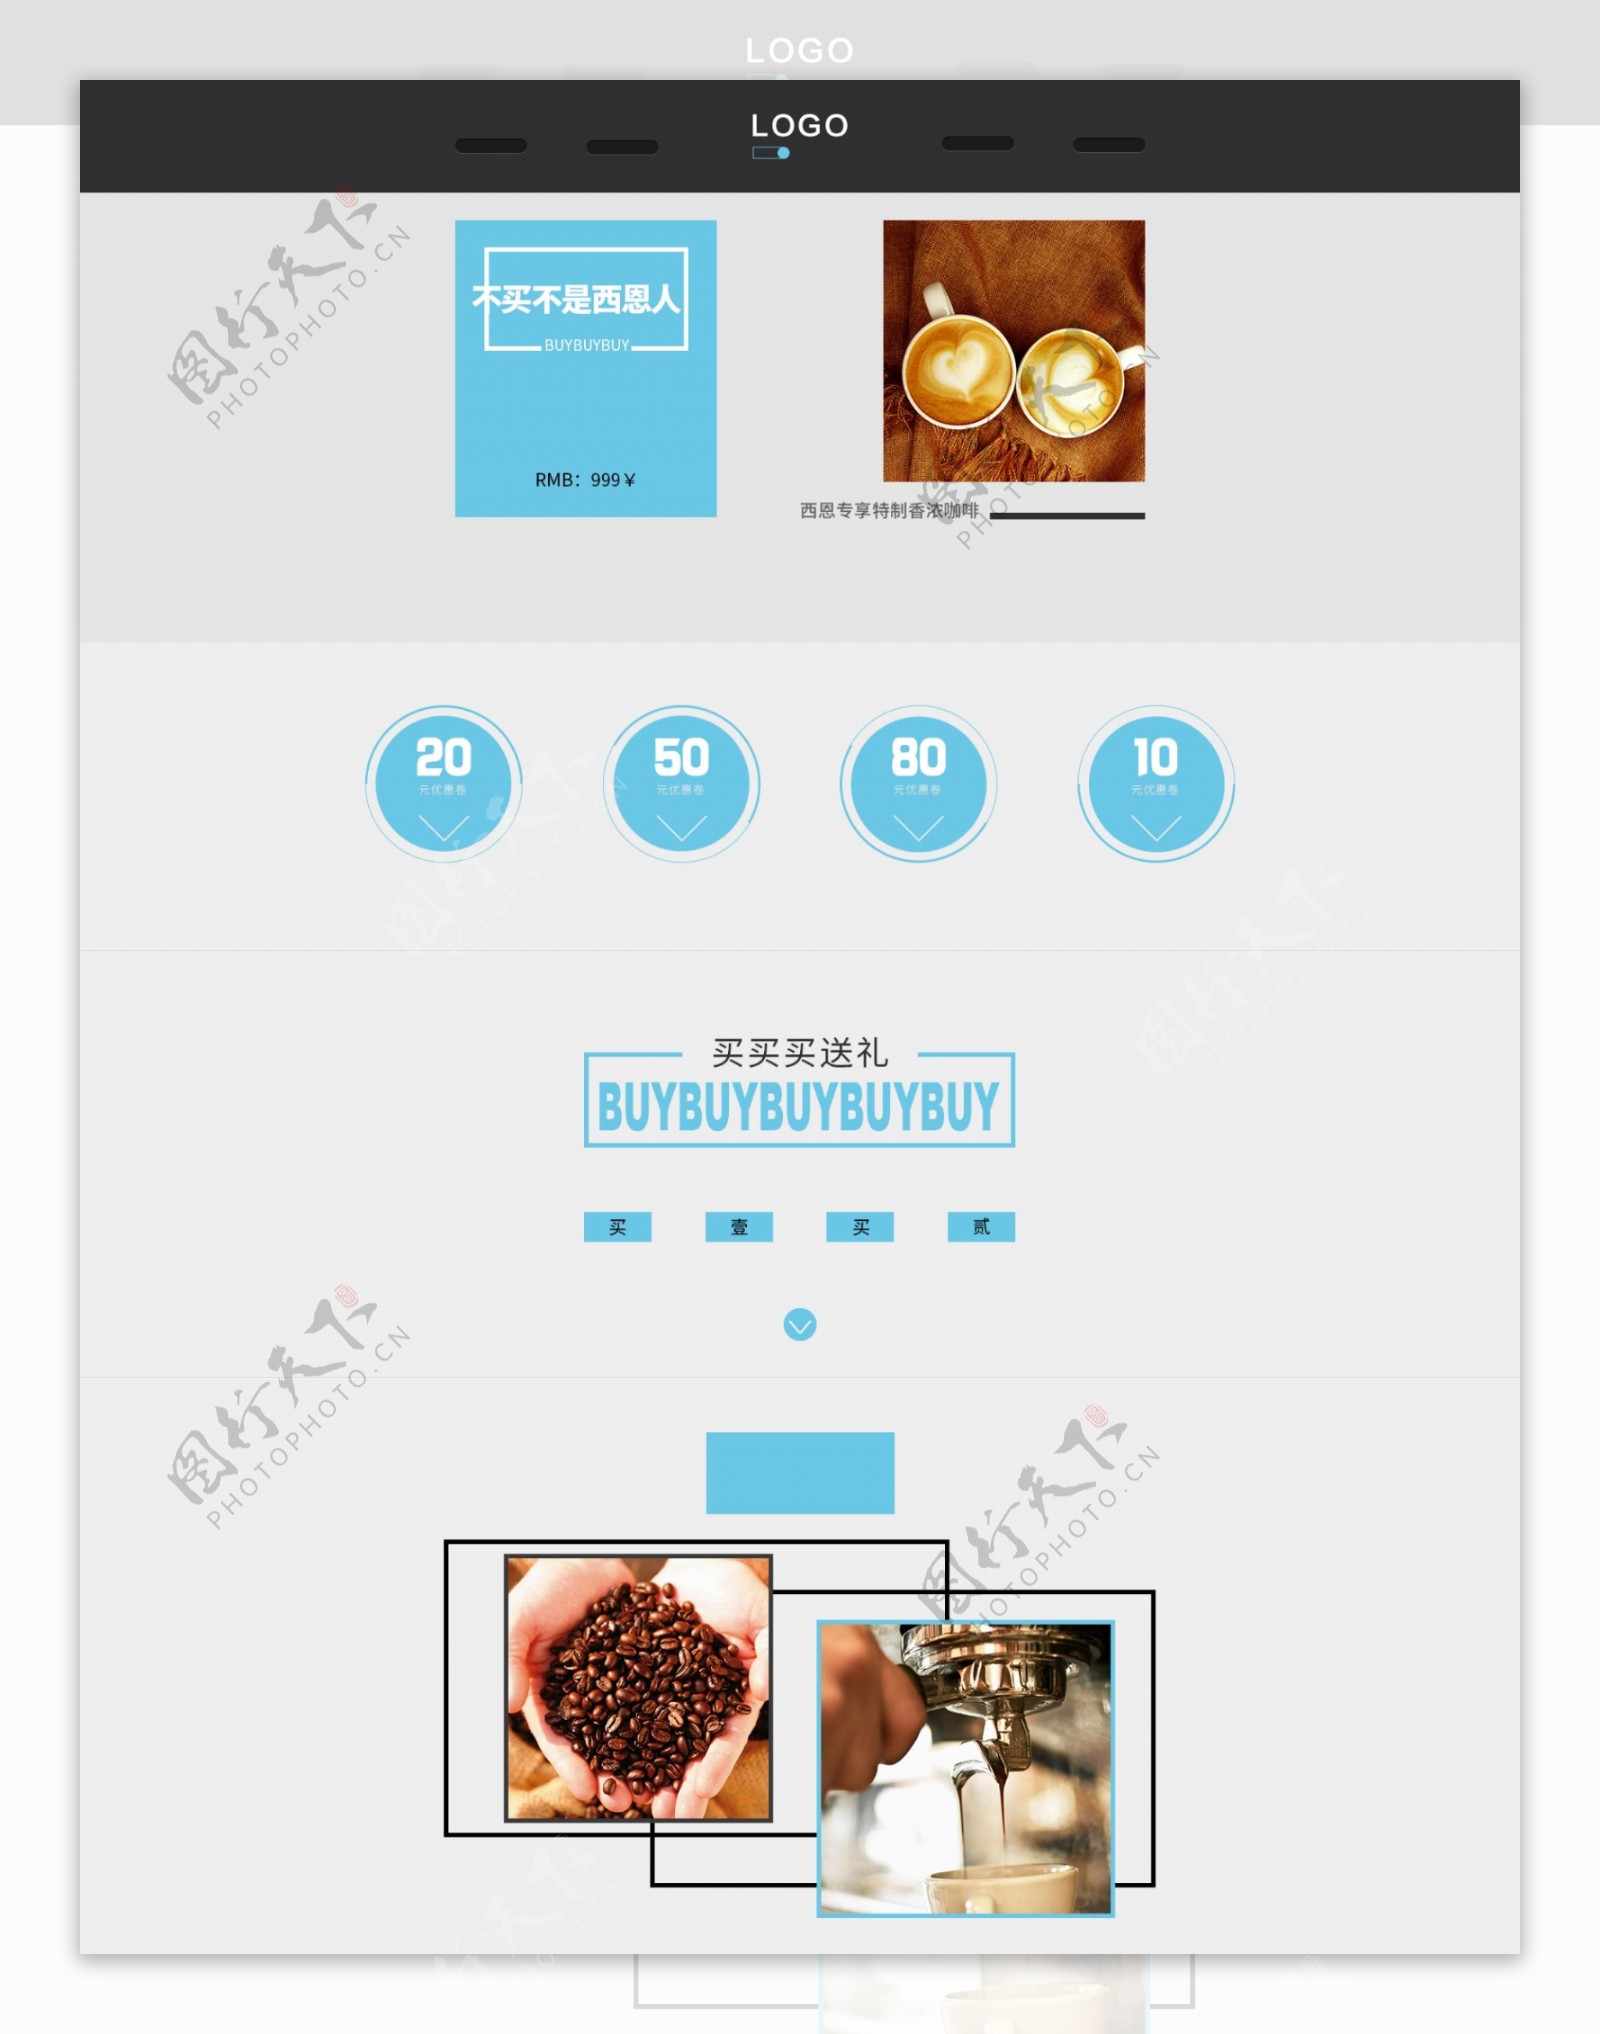 天猫咖啡店首页设计模板PSD下载